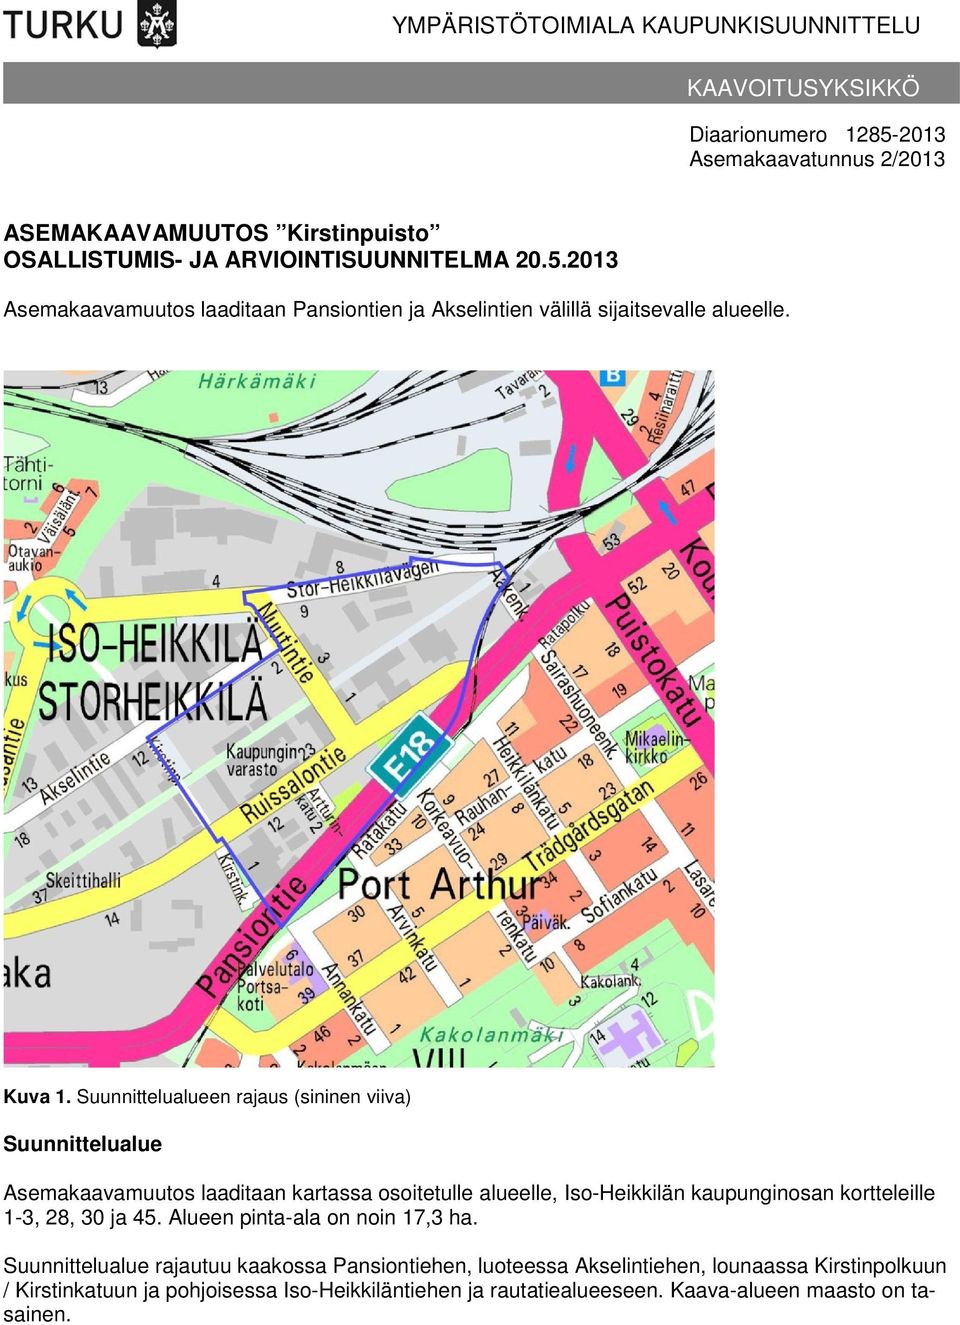 Suunnittelualueen rajaus (sininen viiva) Suunnittelualue Asemakaavamuutos laaditaan kartassa osoitetulle alueelle, Iso-Heikkilän kaupunginosan kortteleille 1-3, 28, 30 ja